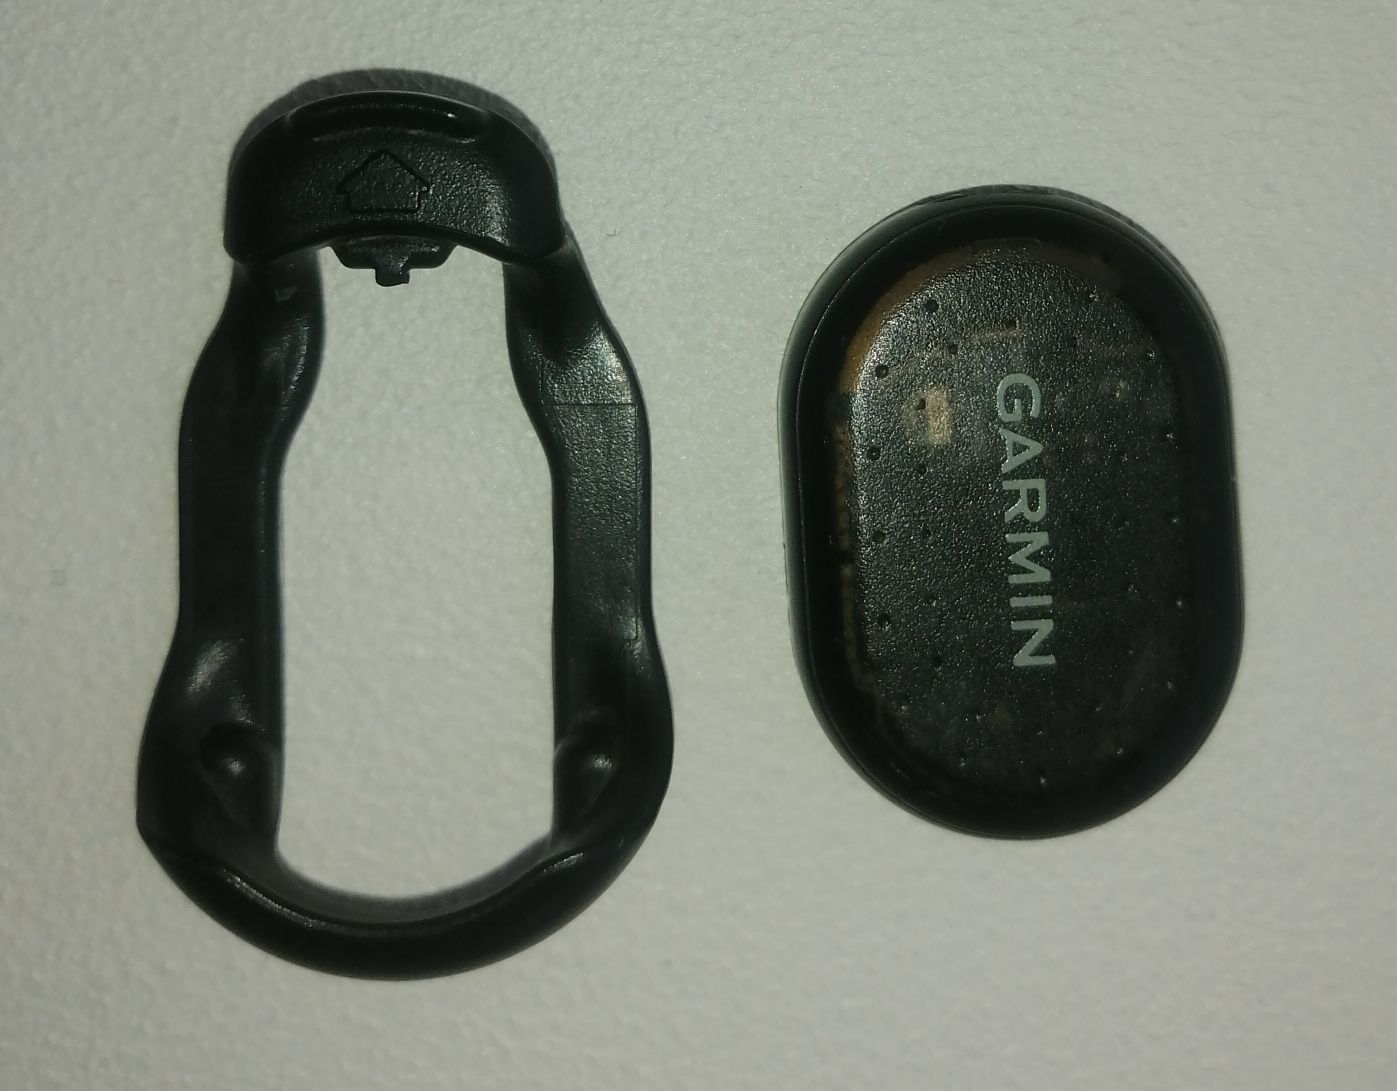 Garmin Foot Pod running